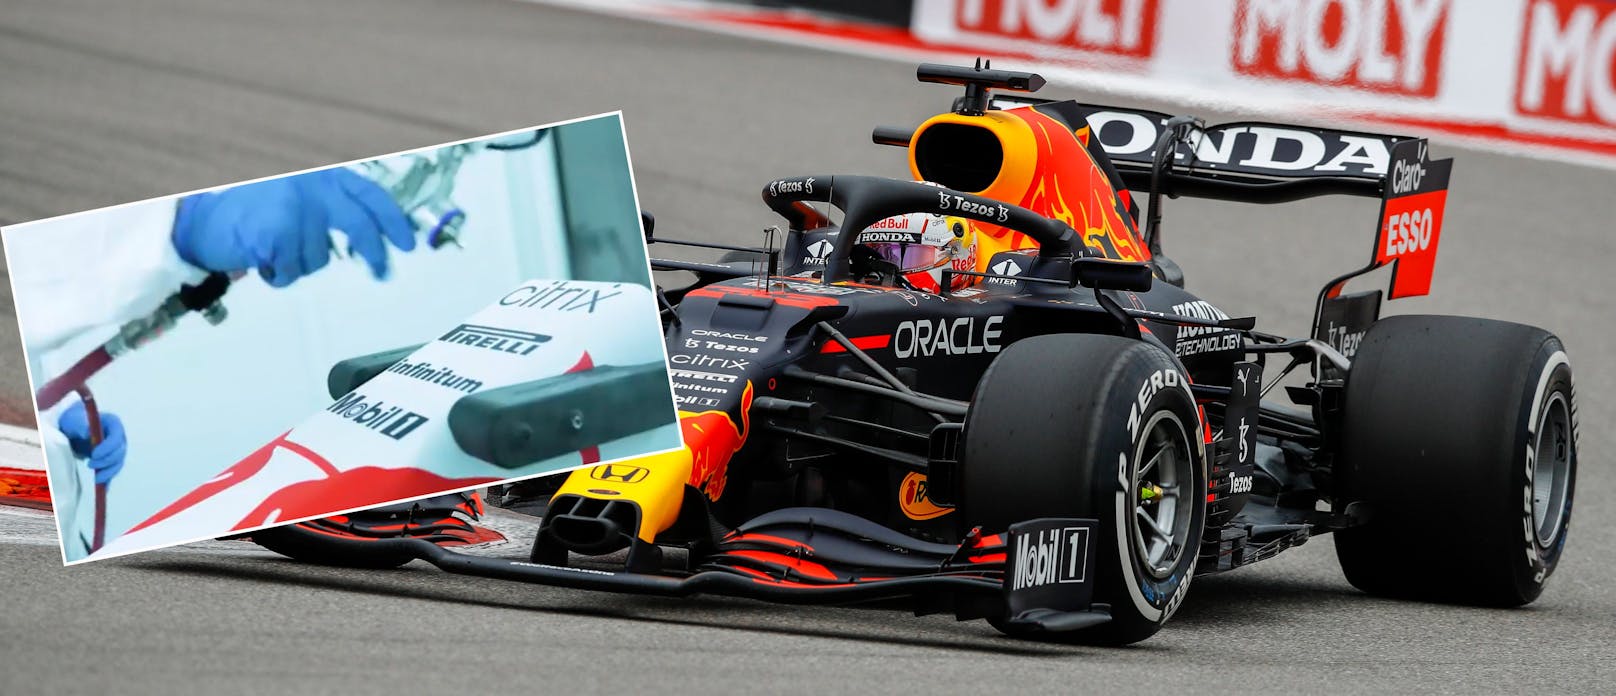 Red Bull ändert Farben vor Formel-1-Rennen in Türkei